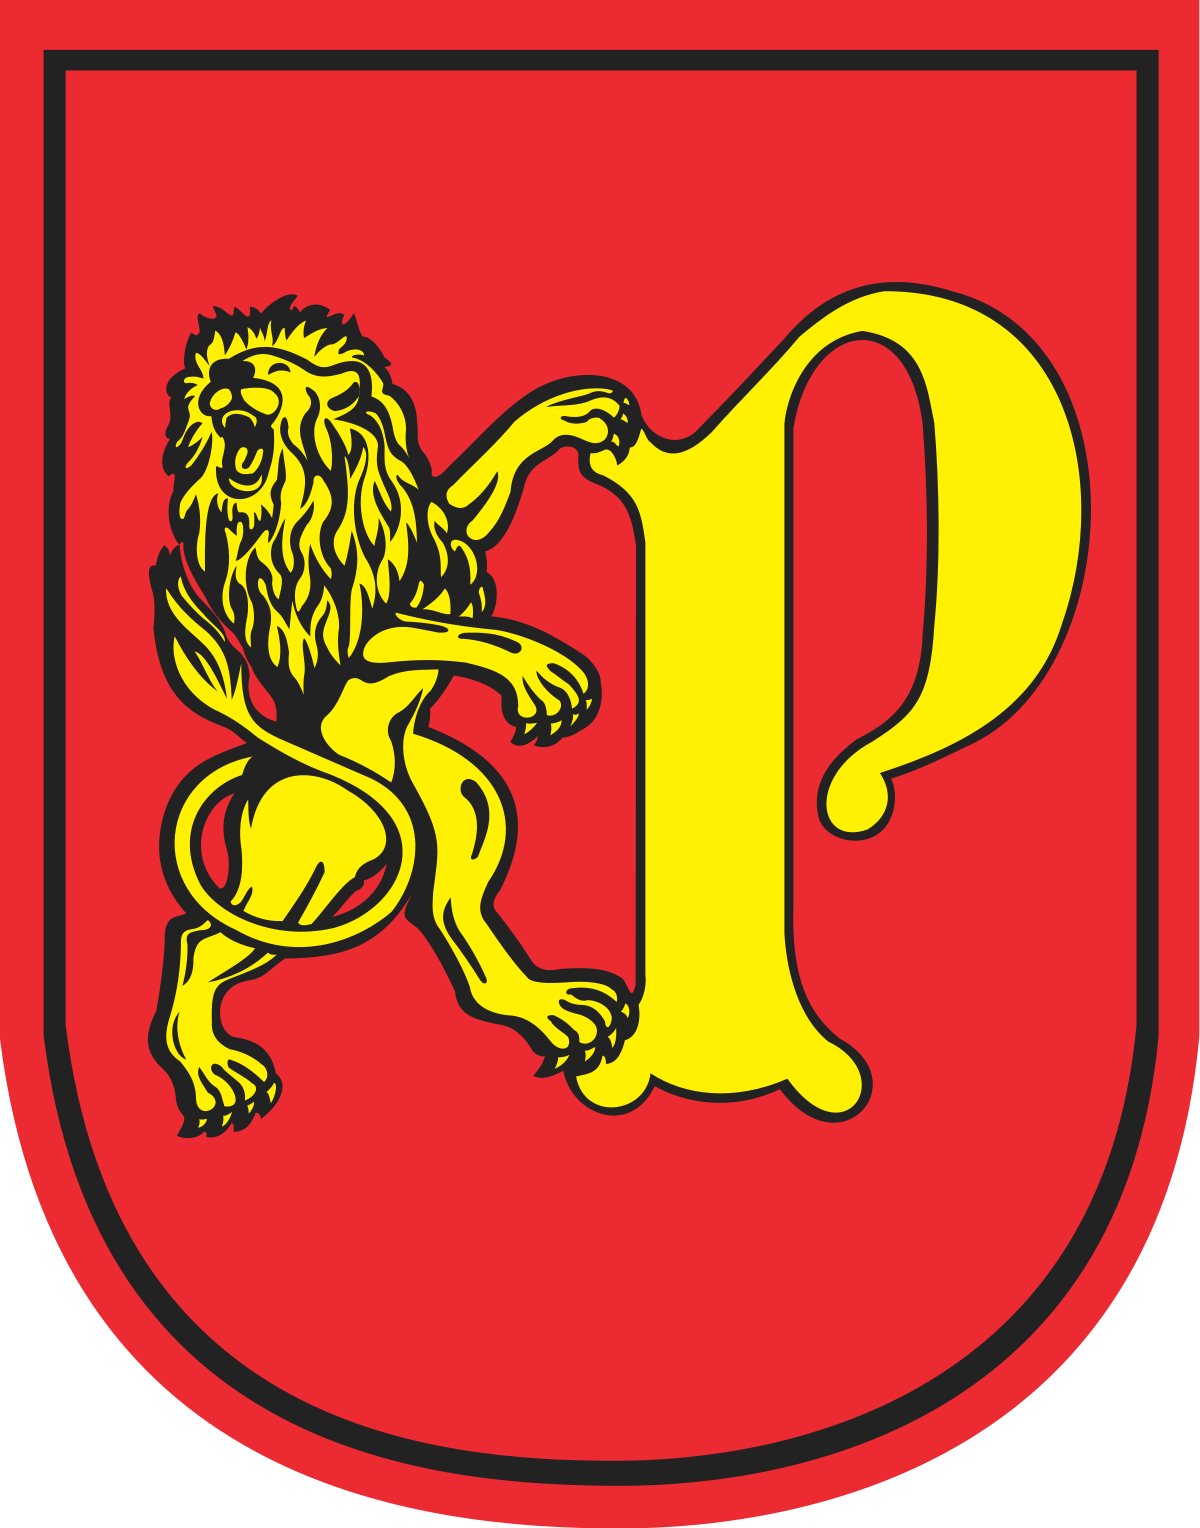 GMINA MIEJSKA PRUSZCZ GDAŃSKI - Company Logo